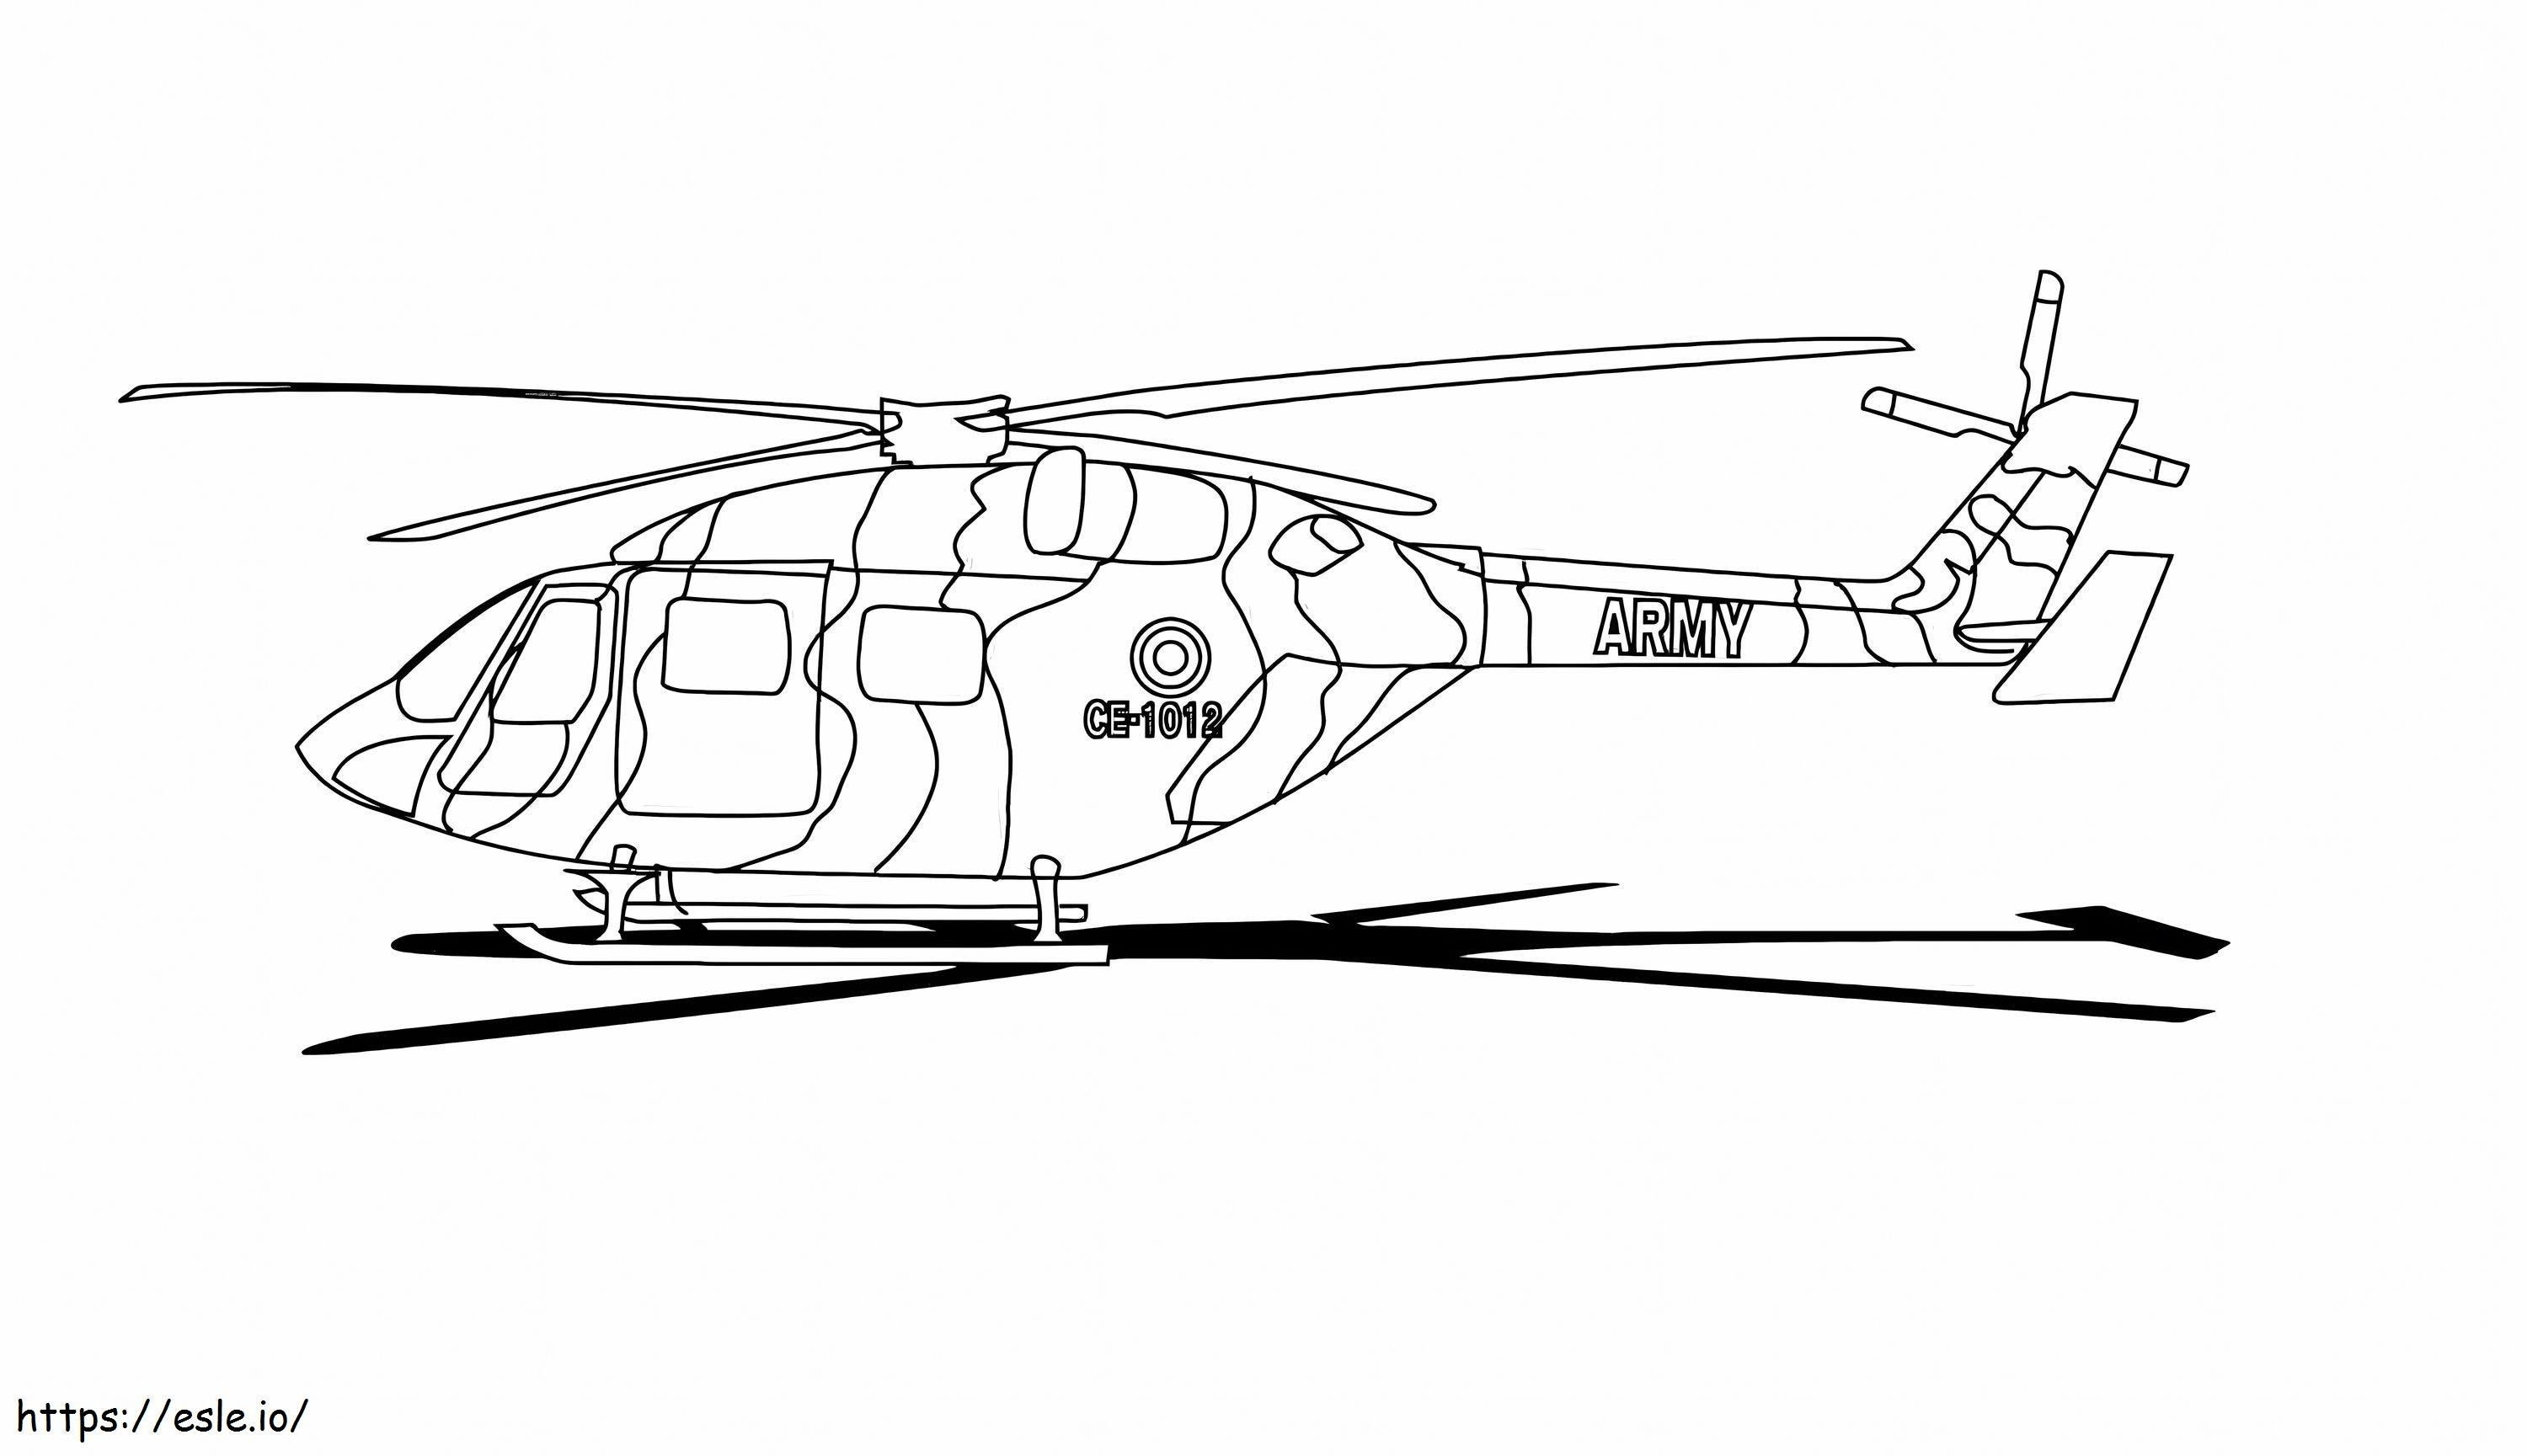 Elicopter CE 1020 de colorat